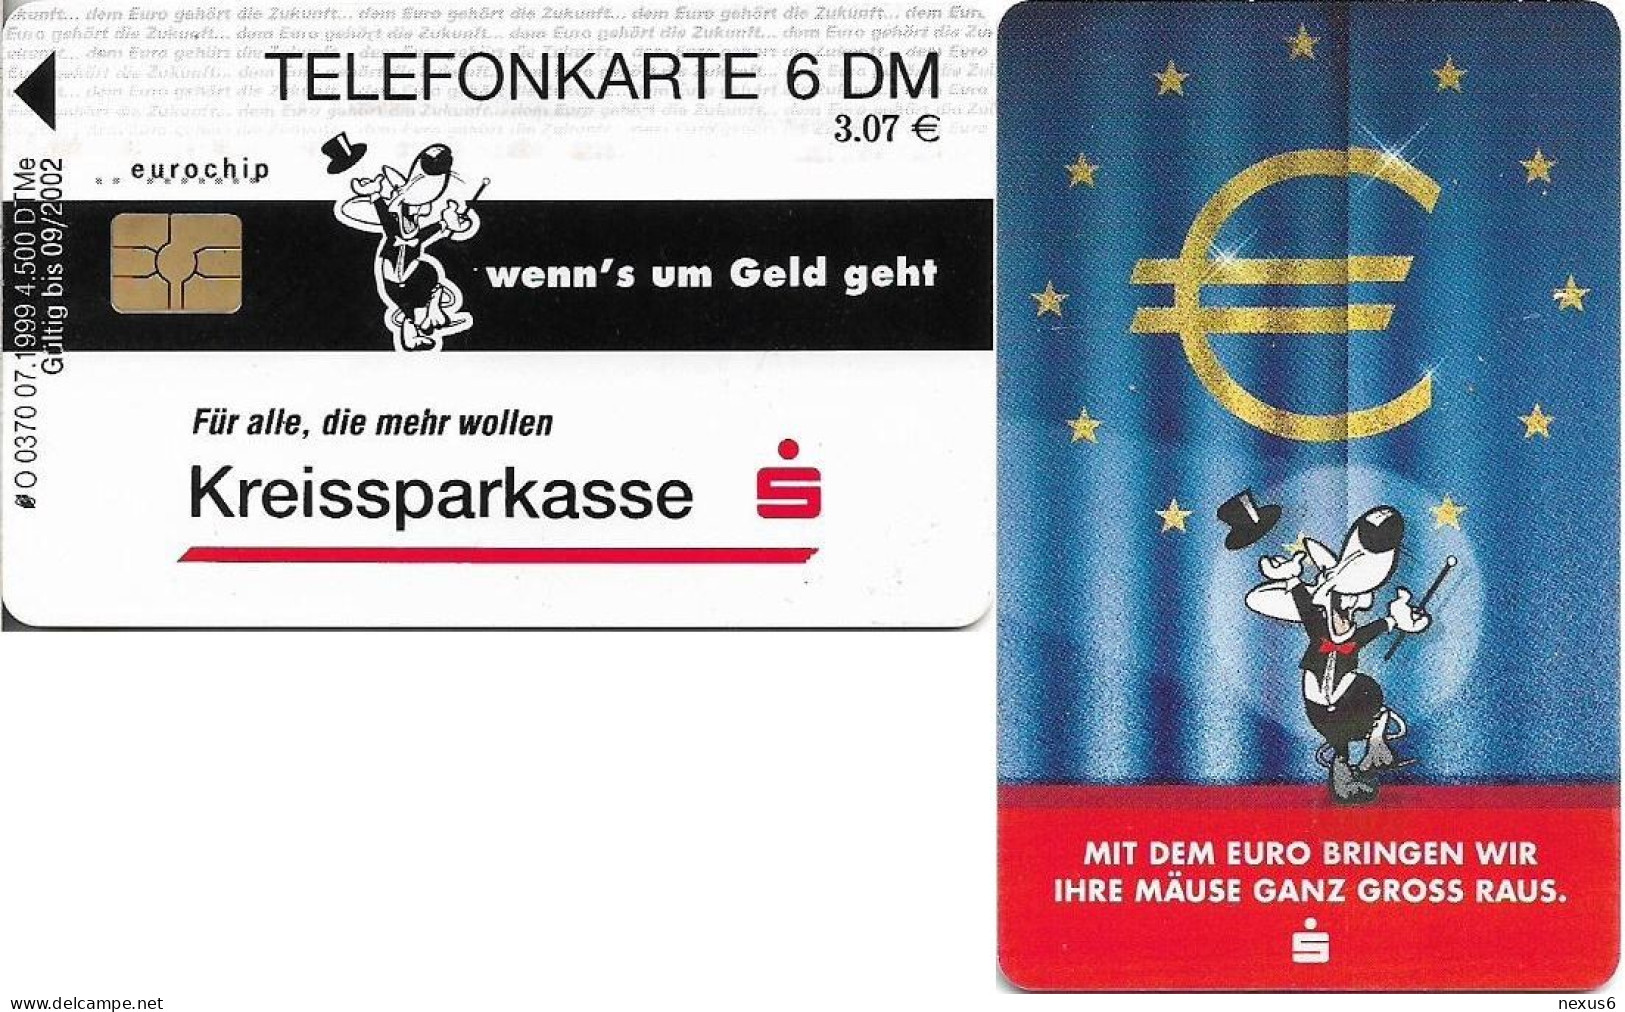 Germany - Sparkasse - Mit Dem Euro (Overprint 'Kreissparkasse') - O 0370 - 07.1999, 6DM, Used - O-Series: Kundenserie Vom Sammlerservice Ausgeschlossen